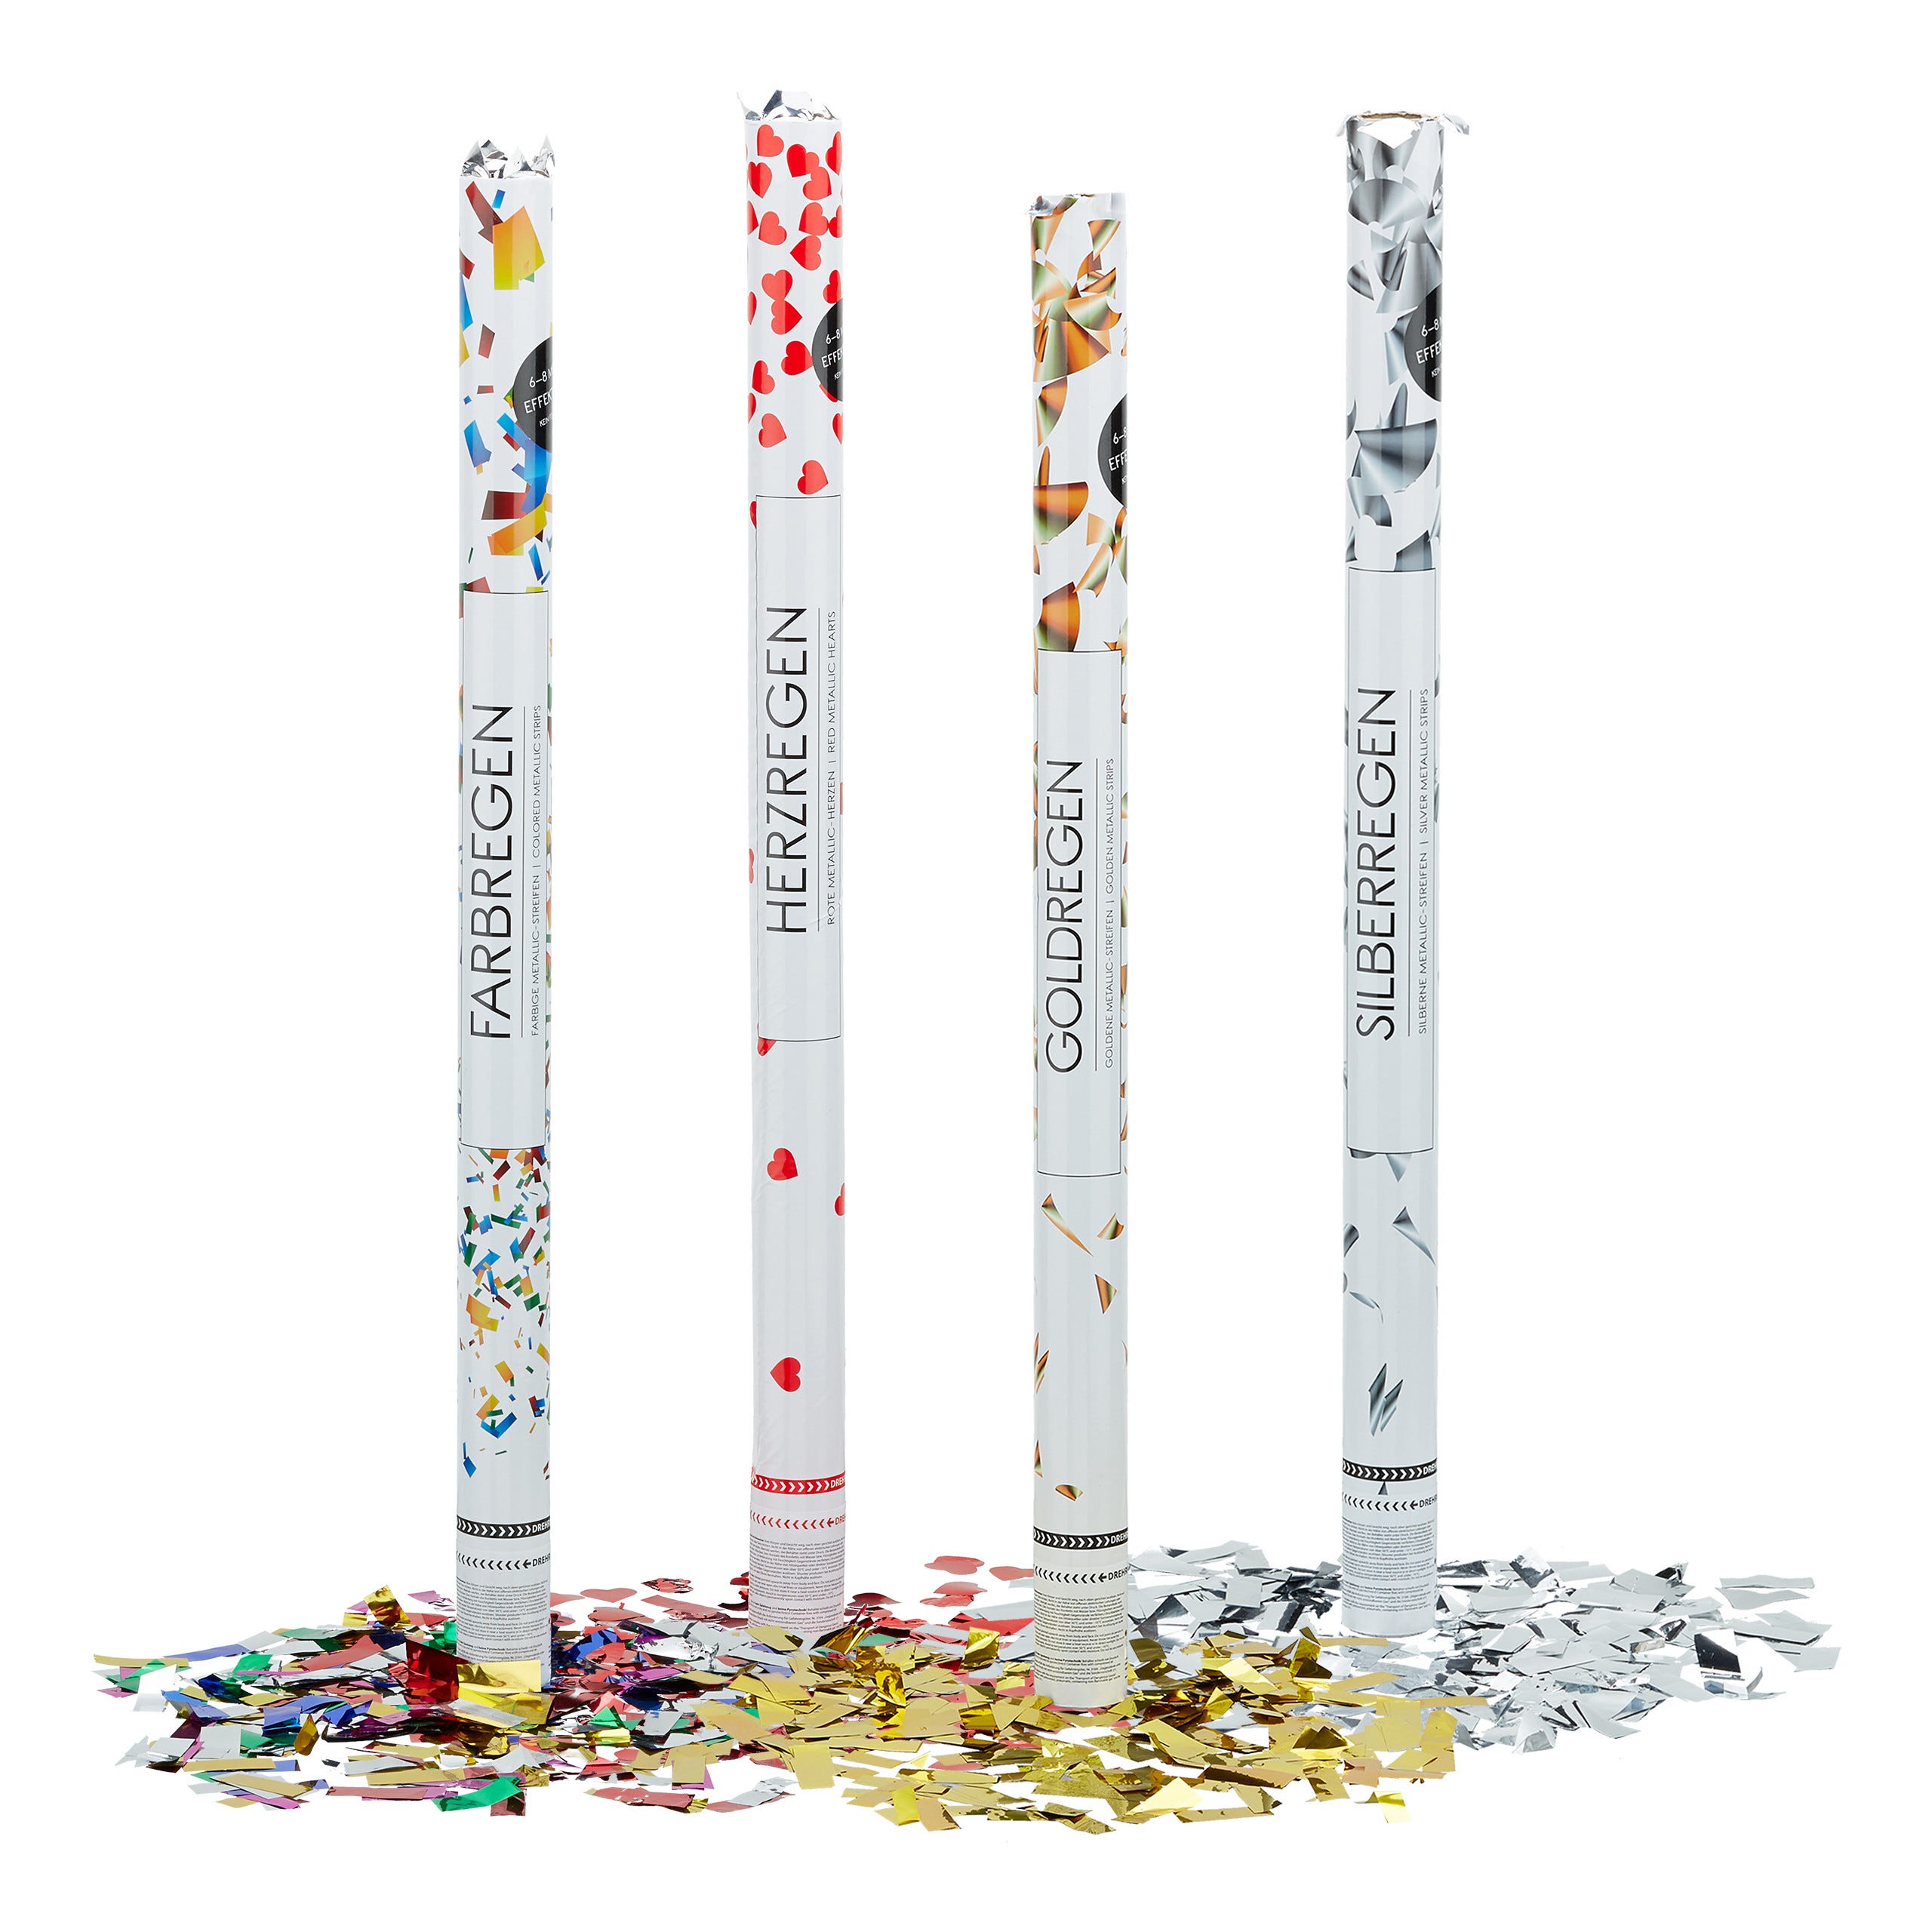 20x Lanceurs confettis mix couleurs canons party popper fête décoration  mariage cadeau portée 6-8 m , mélange de couleurs